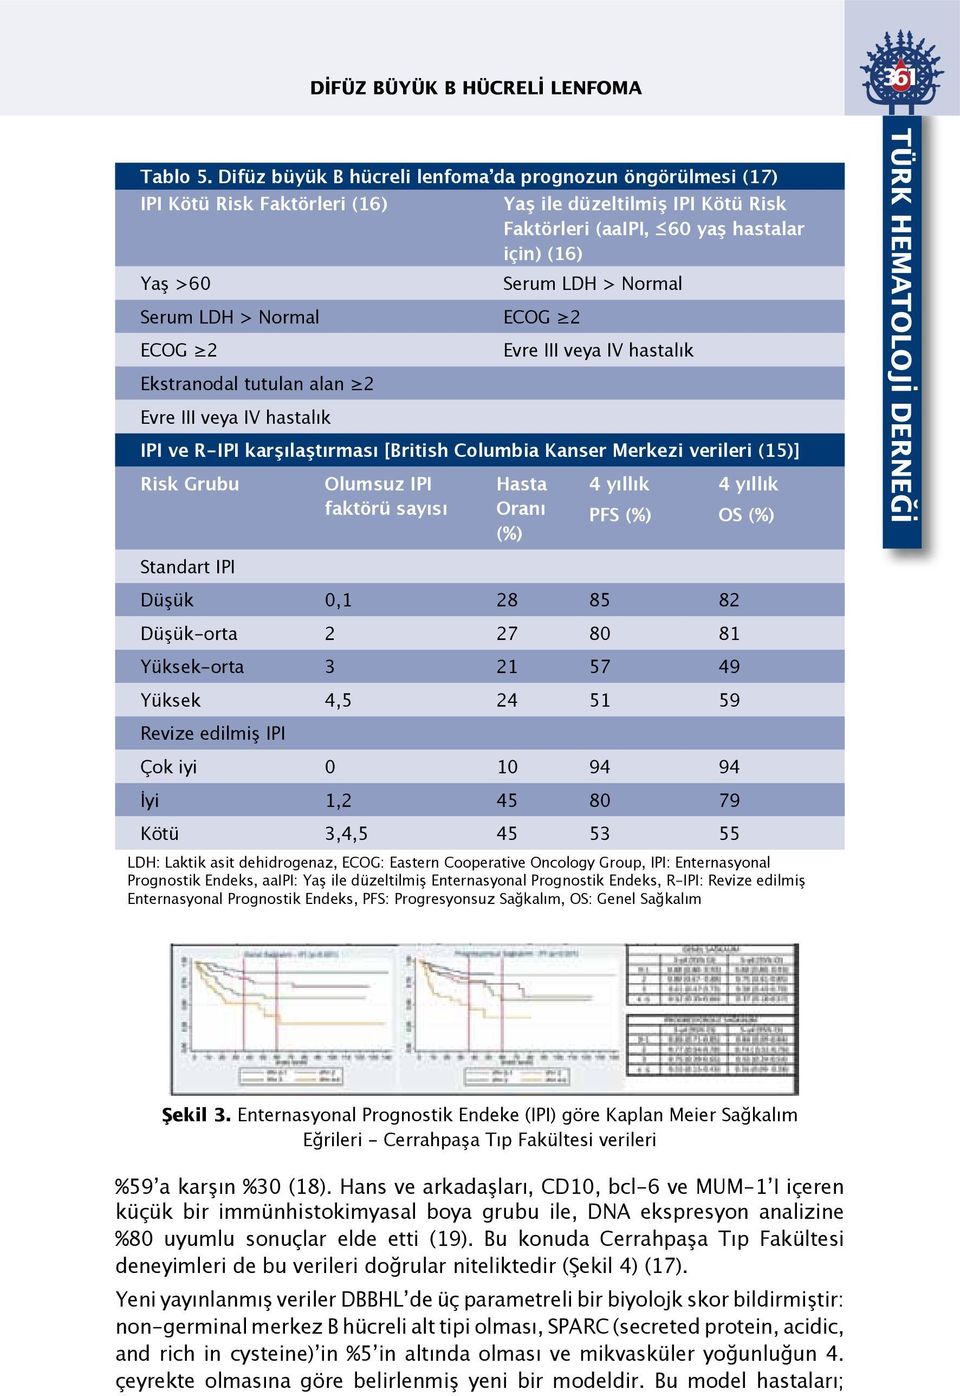 Serum LDH > Normal ECOG 2 ECOG 2 Evre III veya IV hastalık Ekstranodal tutulan alan 2 Evre III veya IV hastalık IPI ve R-IPI karşılaştırması [British Columbia Kanser Merkezi verileri (15)] Risk Grubu